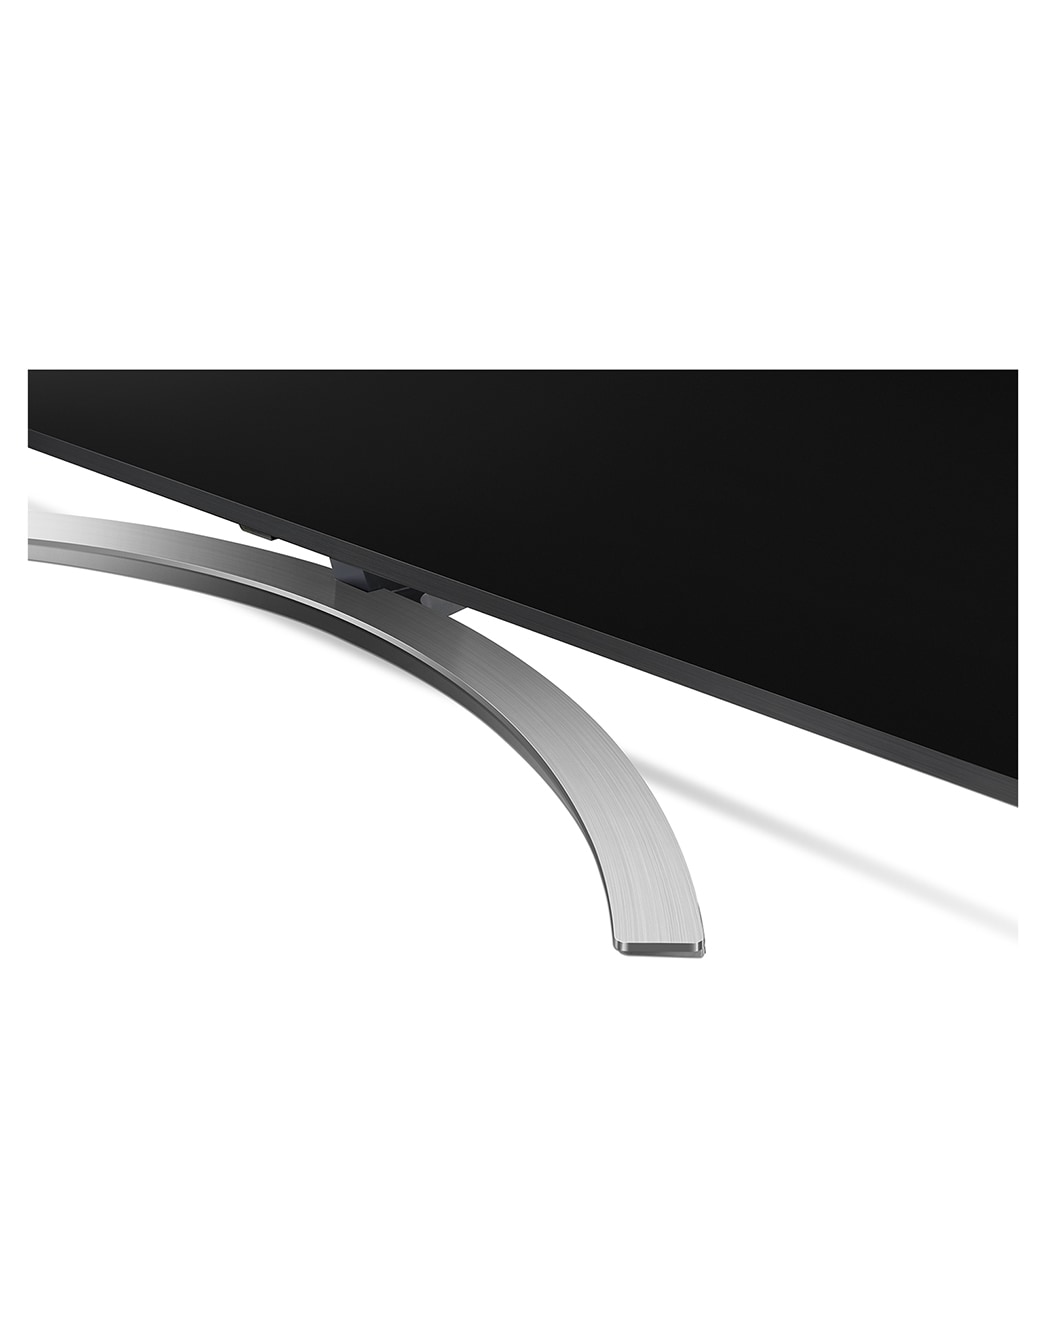 LG Super UHD 4K AI ThinQ™ TV 49 inch 49SM8100PTA | LG Australia